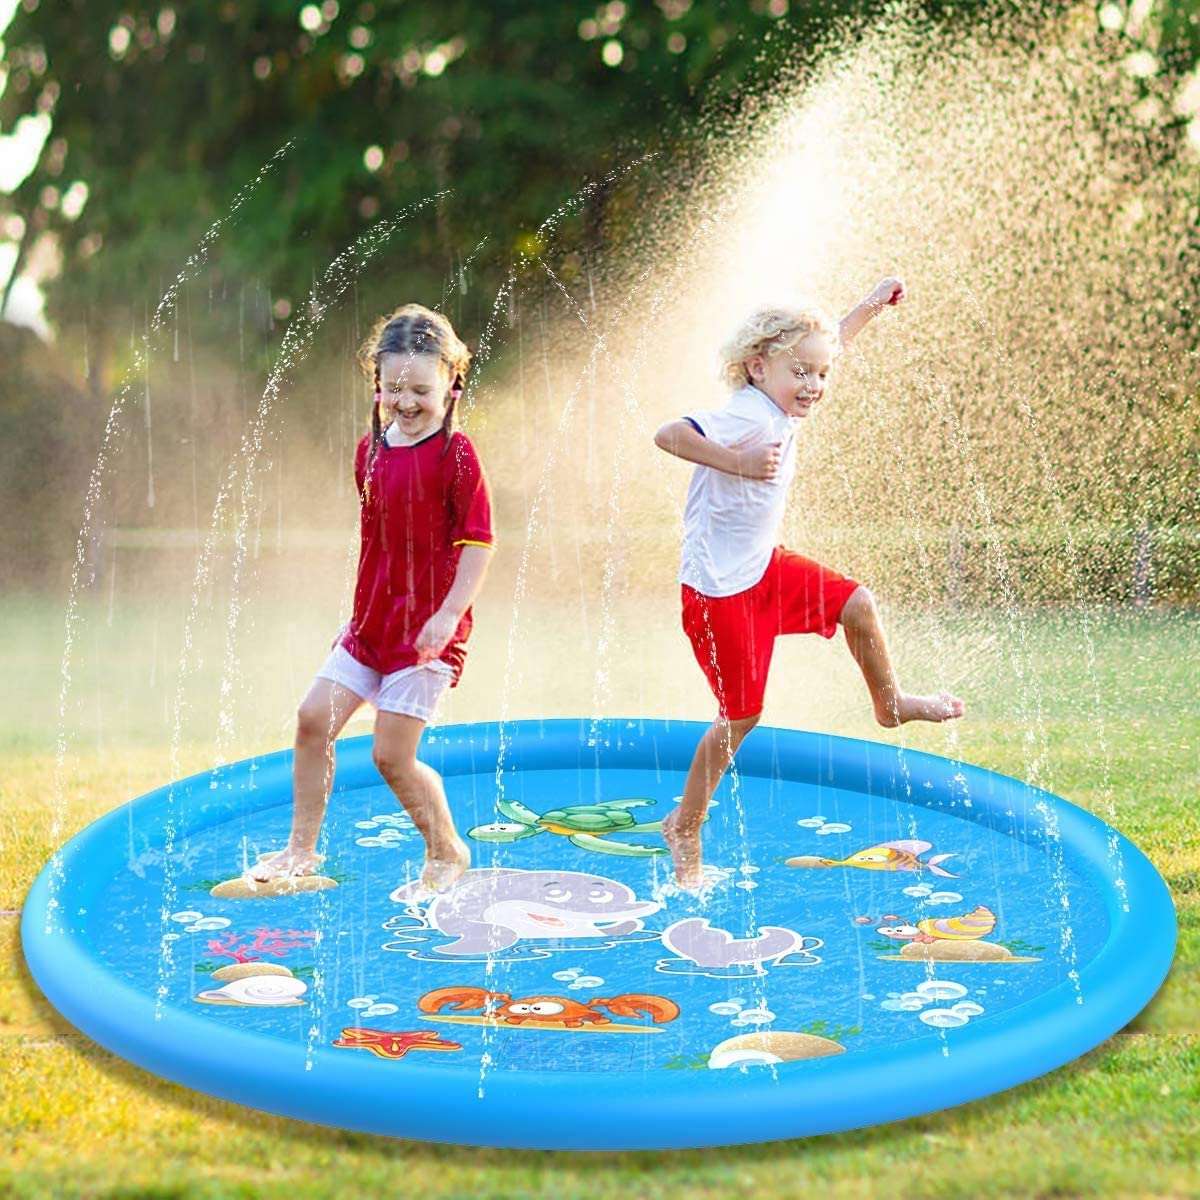 Sprinkler & Splash Pads - Kids Sprinkler & Splash Pads